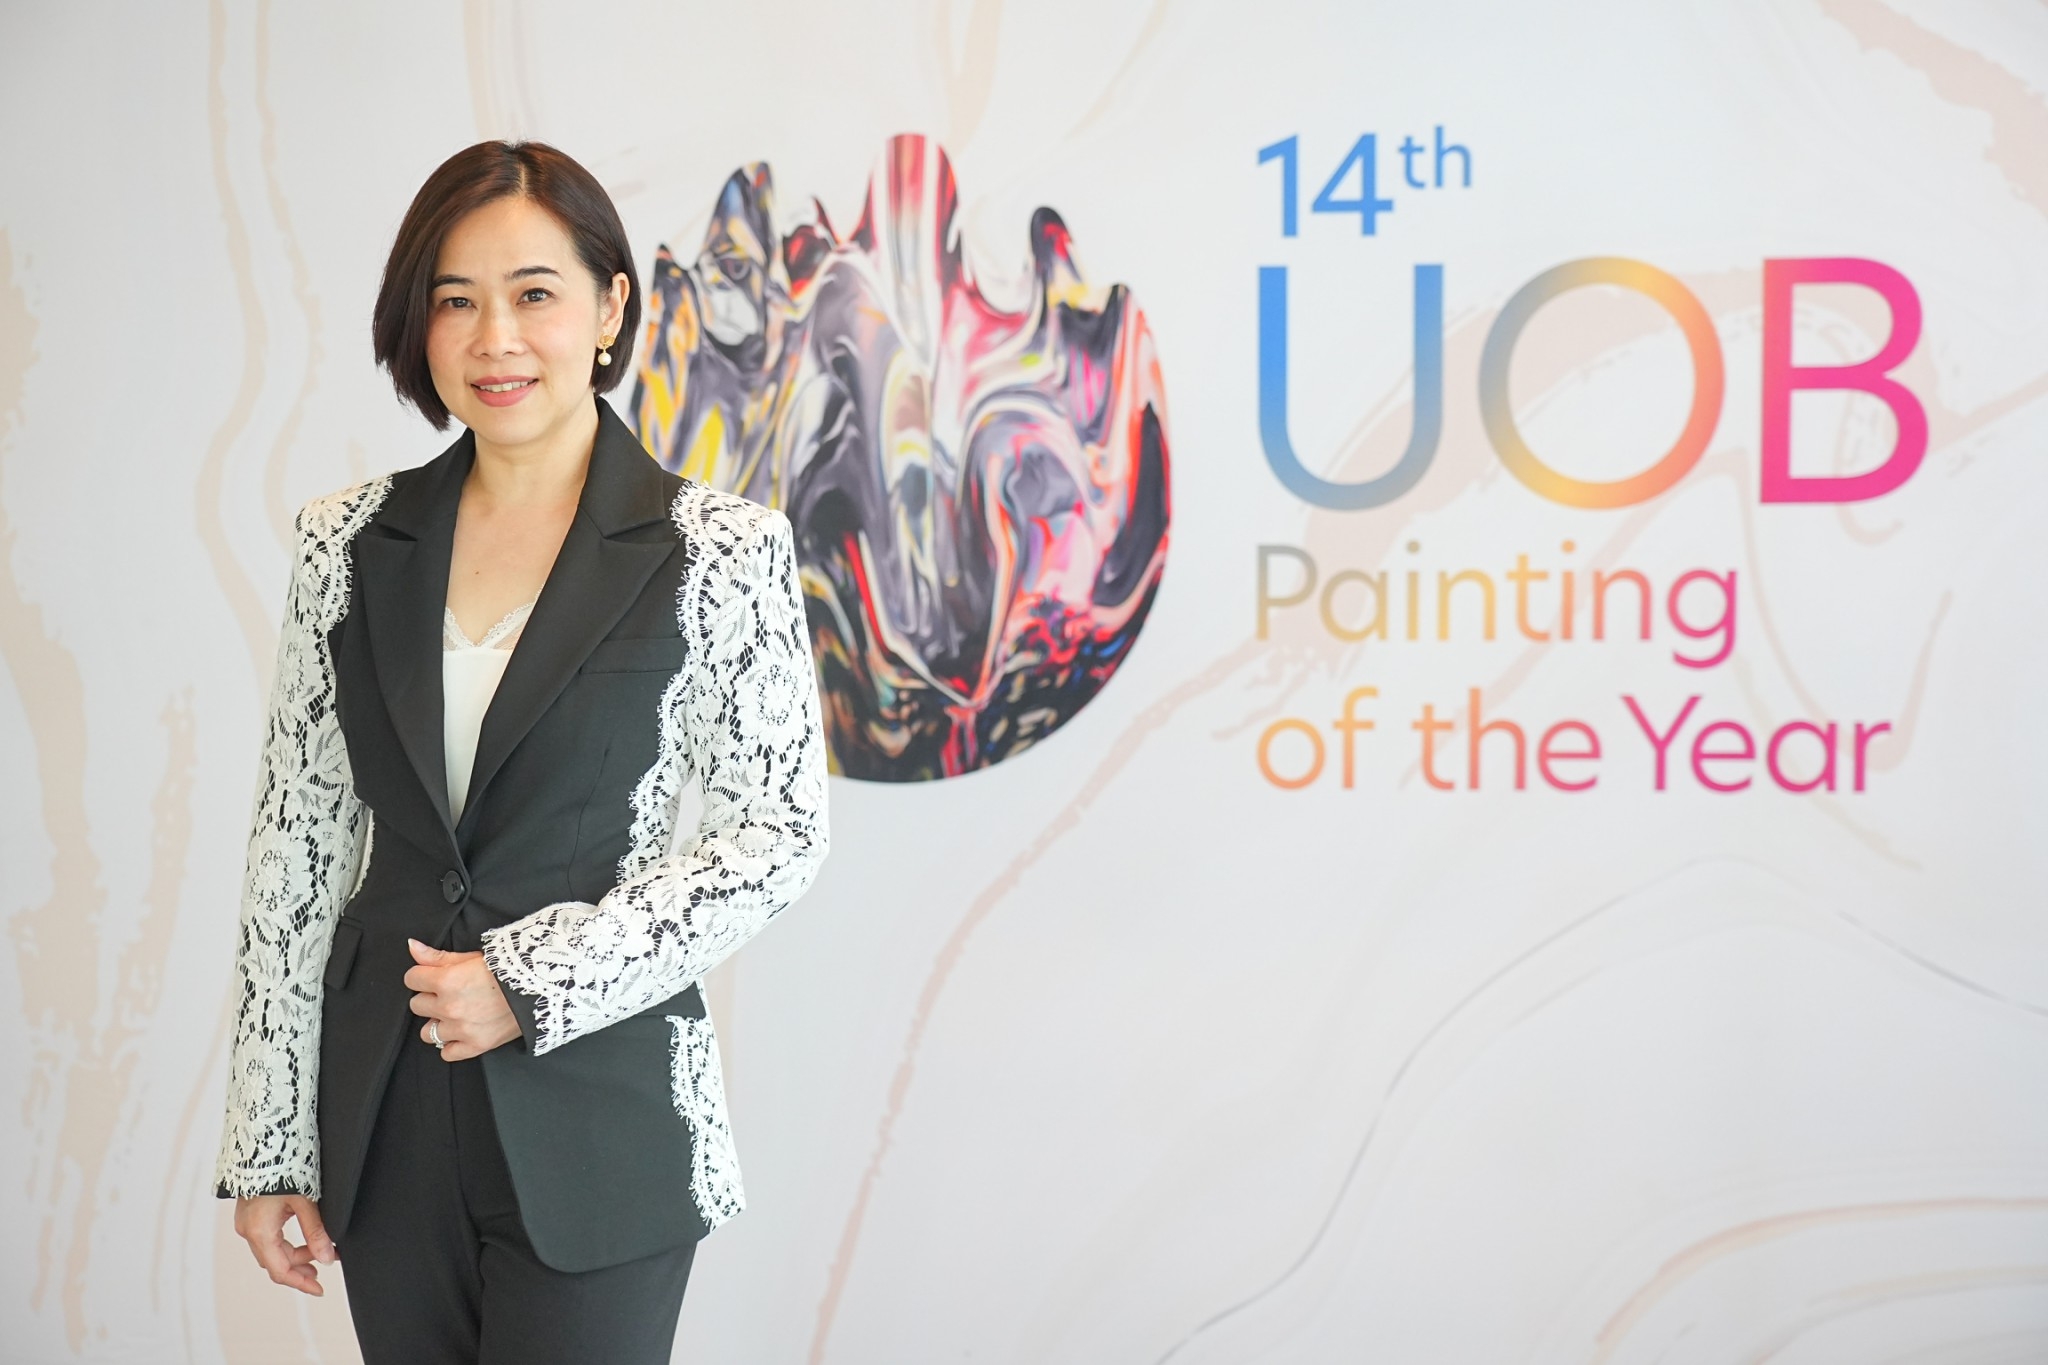 ยูโอบี ประเทศไทย สนับสนุนศิลปินไทยสู่เวทีศิลปะระดับภูมิภาคผ่านการประกวดจิตรกรรมยูโอบี ครั้งที่ 14ในปีนี้ ยูโอบีขยายการประกวดจิตรกรรมยูโอบีสู่ประเทศเวียดนามเป็นประเทศที่ห้า